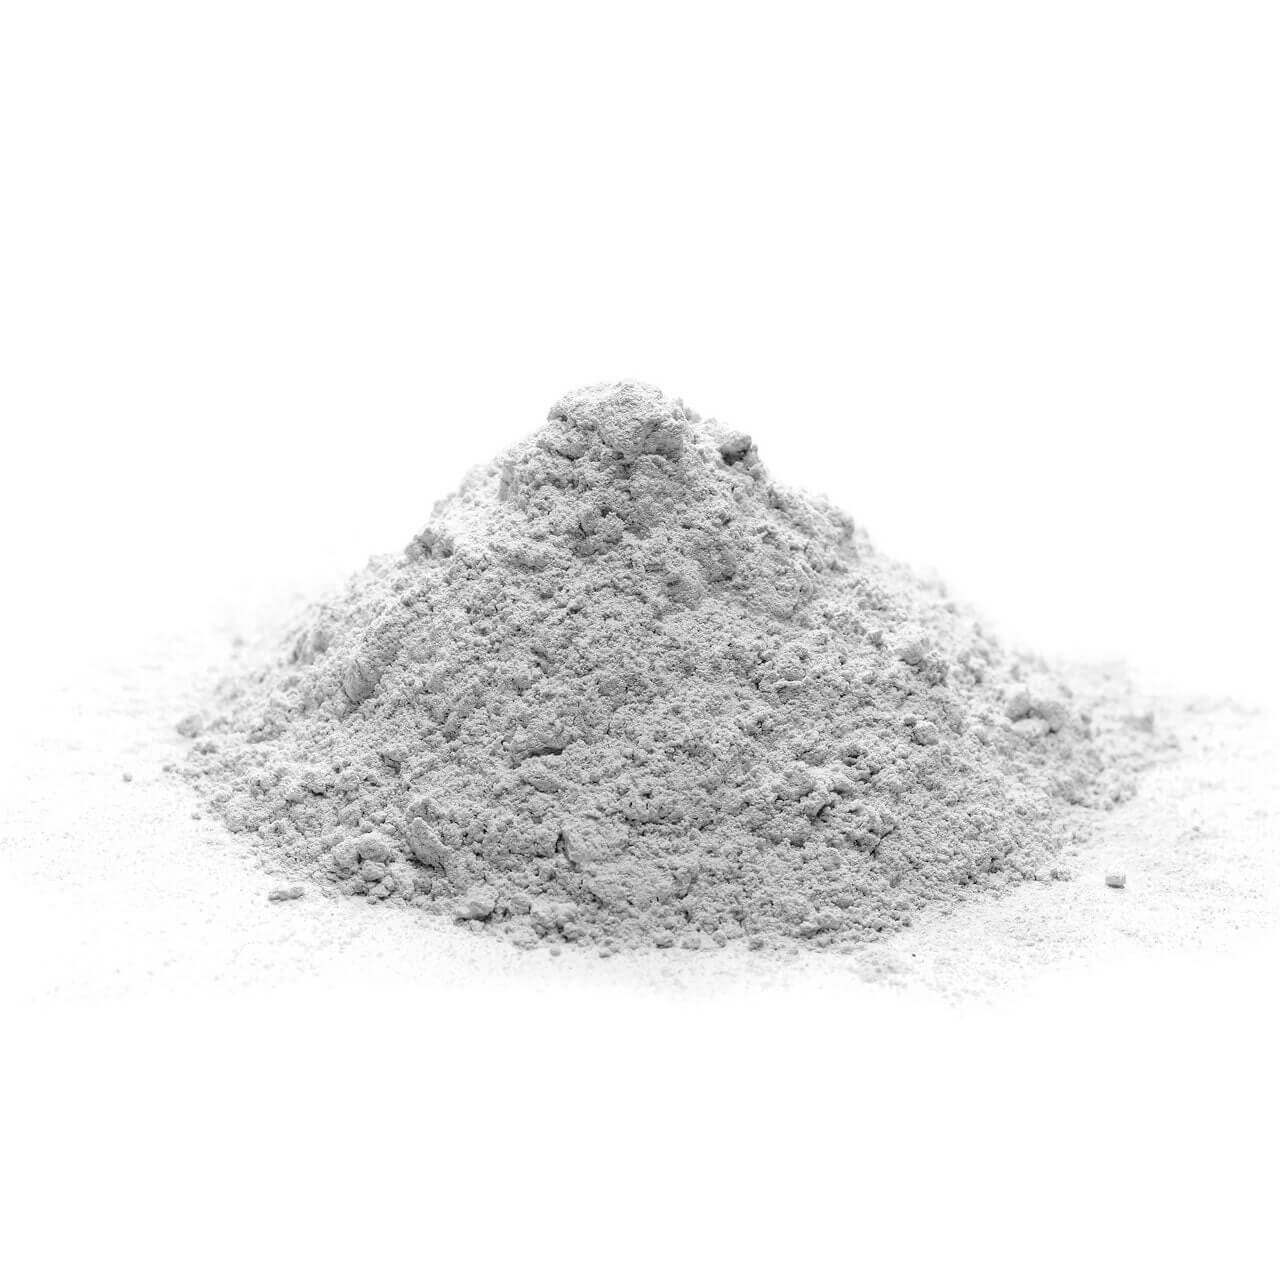 Sand Snow Gips Extra White Powder